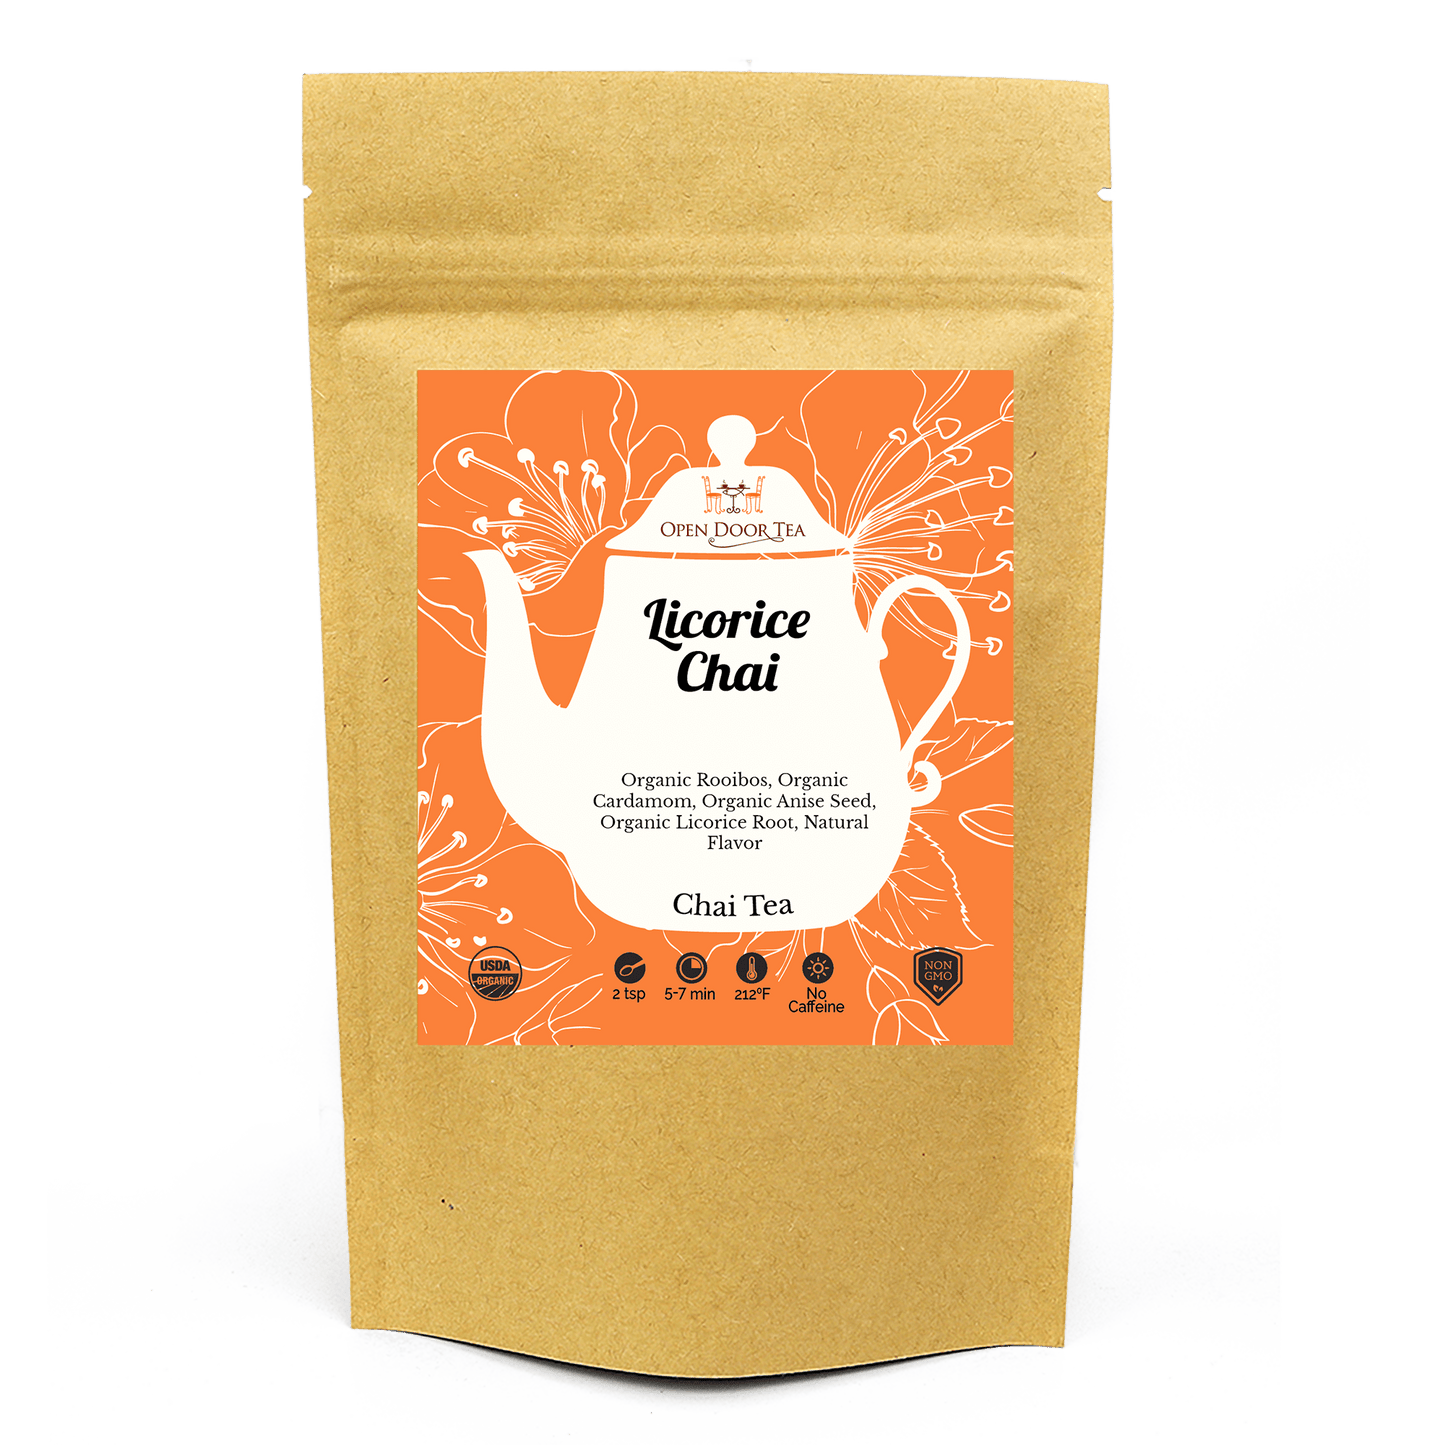 Licorice Chai by Open Door Tea